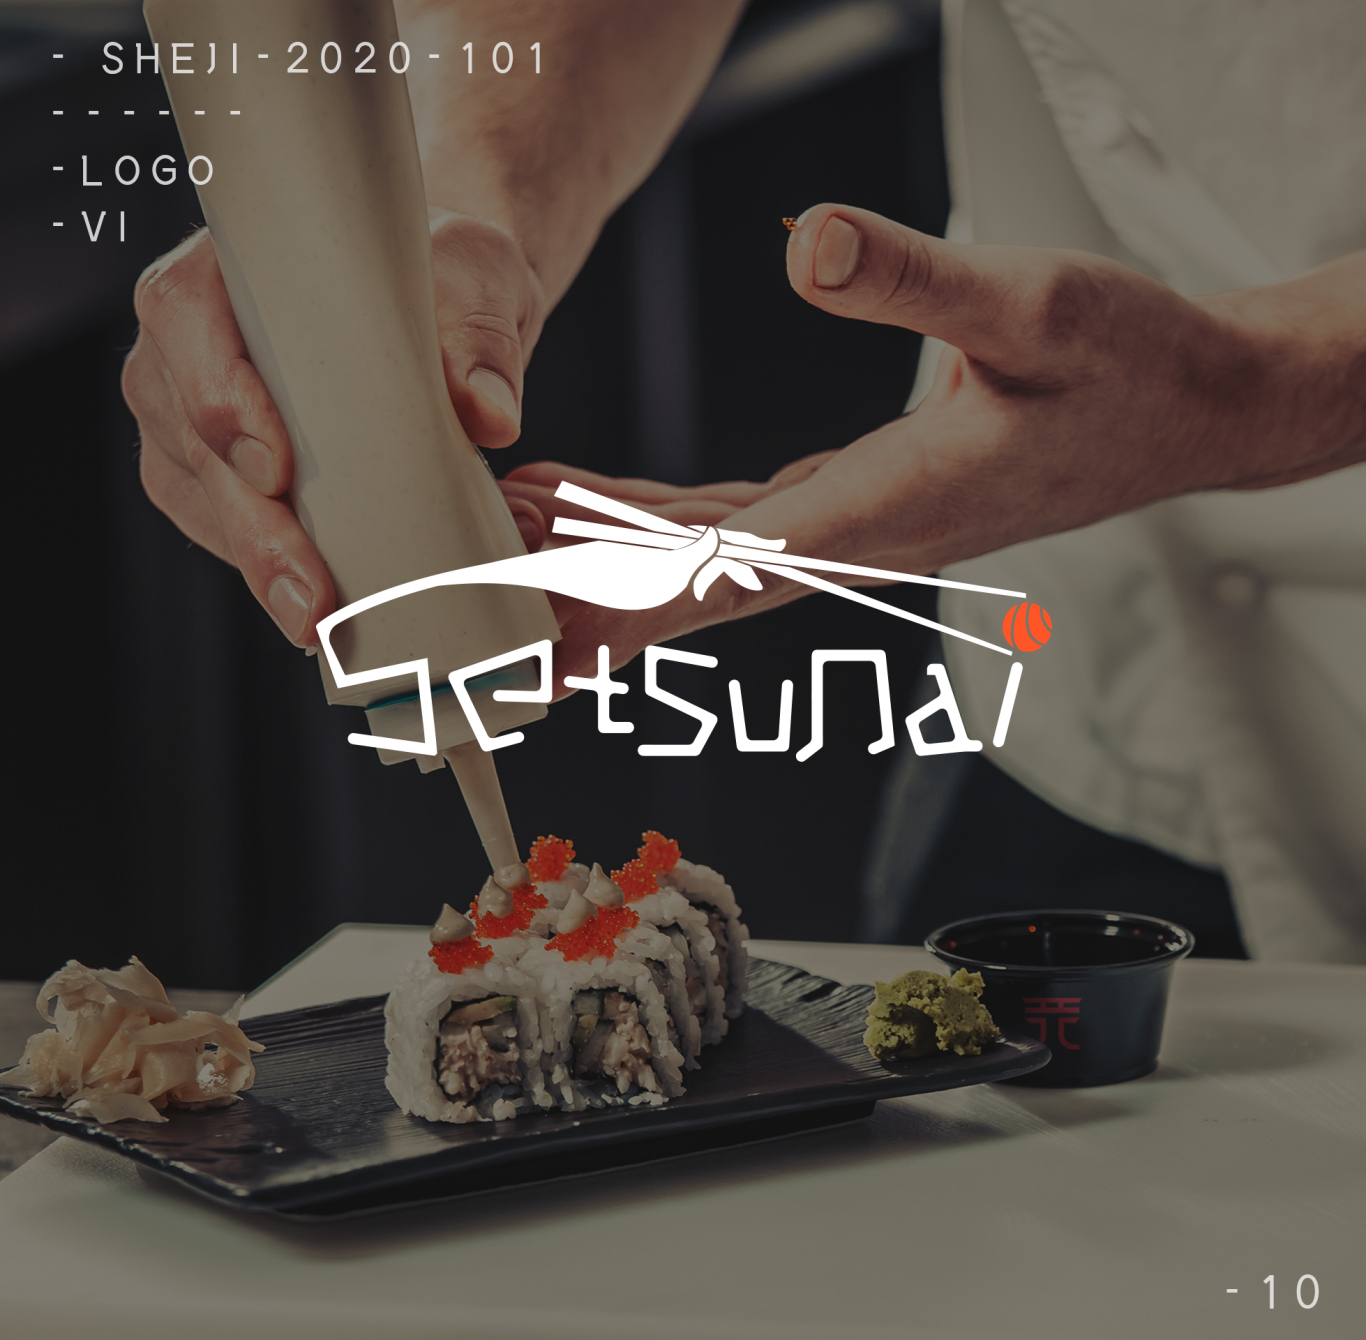 寿司logo / logo设计图5